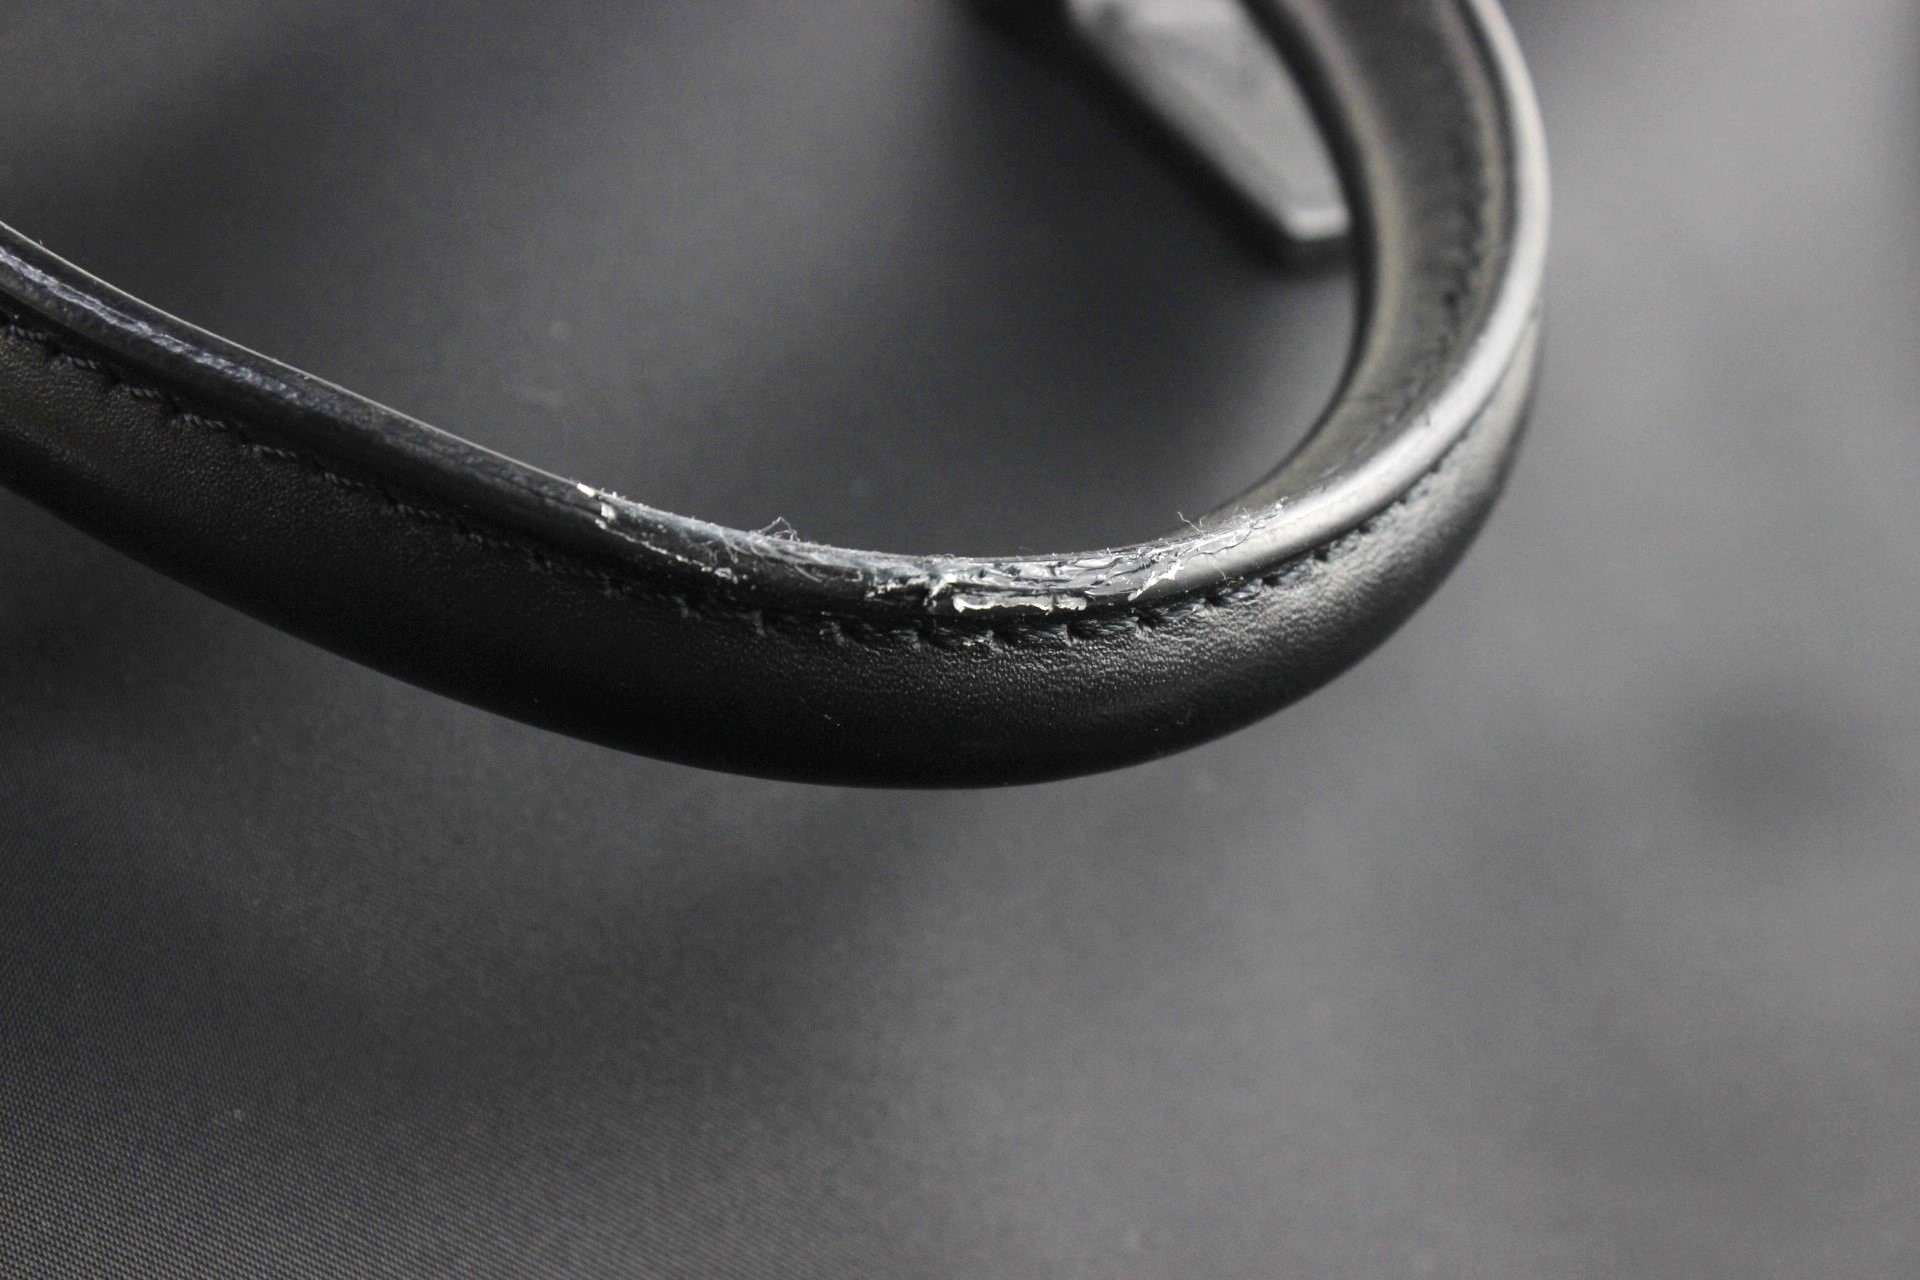  Burberry 2way сумка портфель черный чёрный в клетку серебряный металлические принадлежности ремешок 